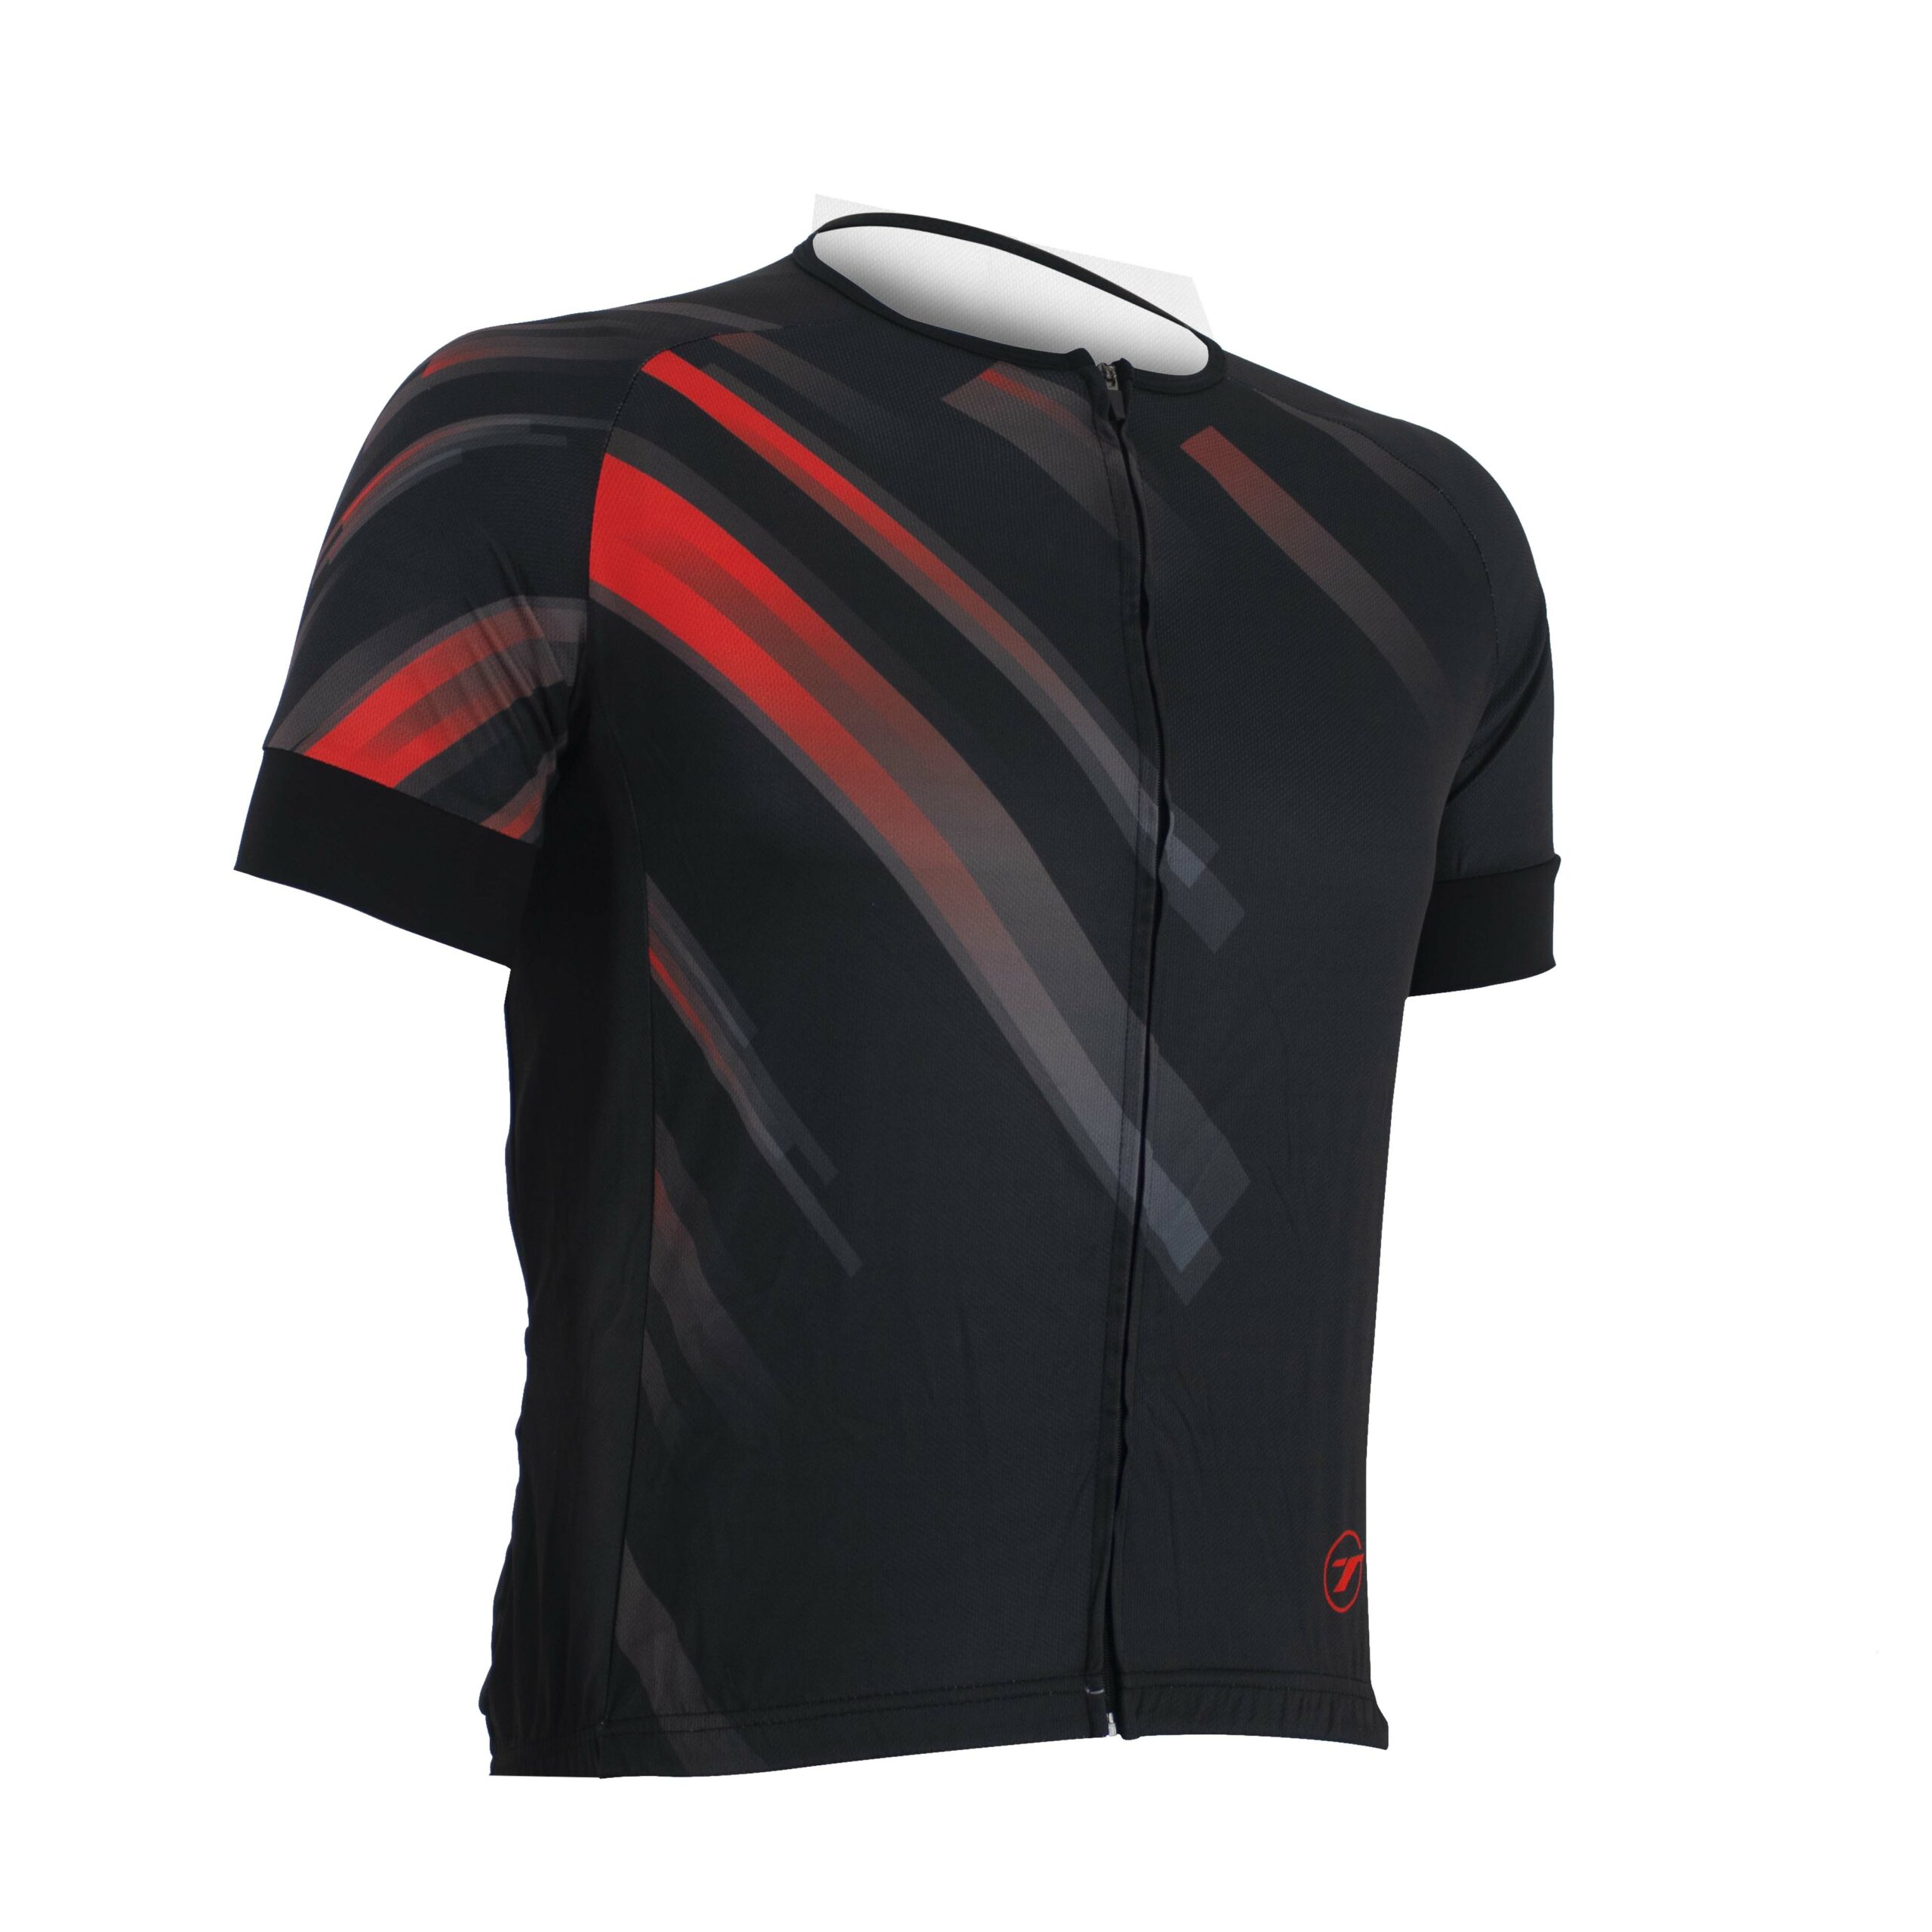 Camisa para ciclismo SUNNY | RIDE LINE - Preto/Vermelho, P